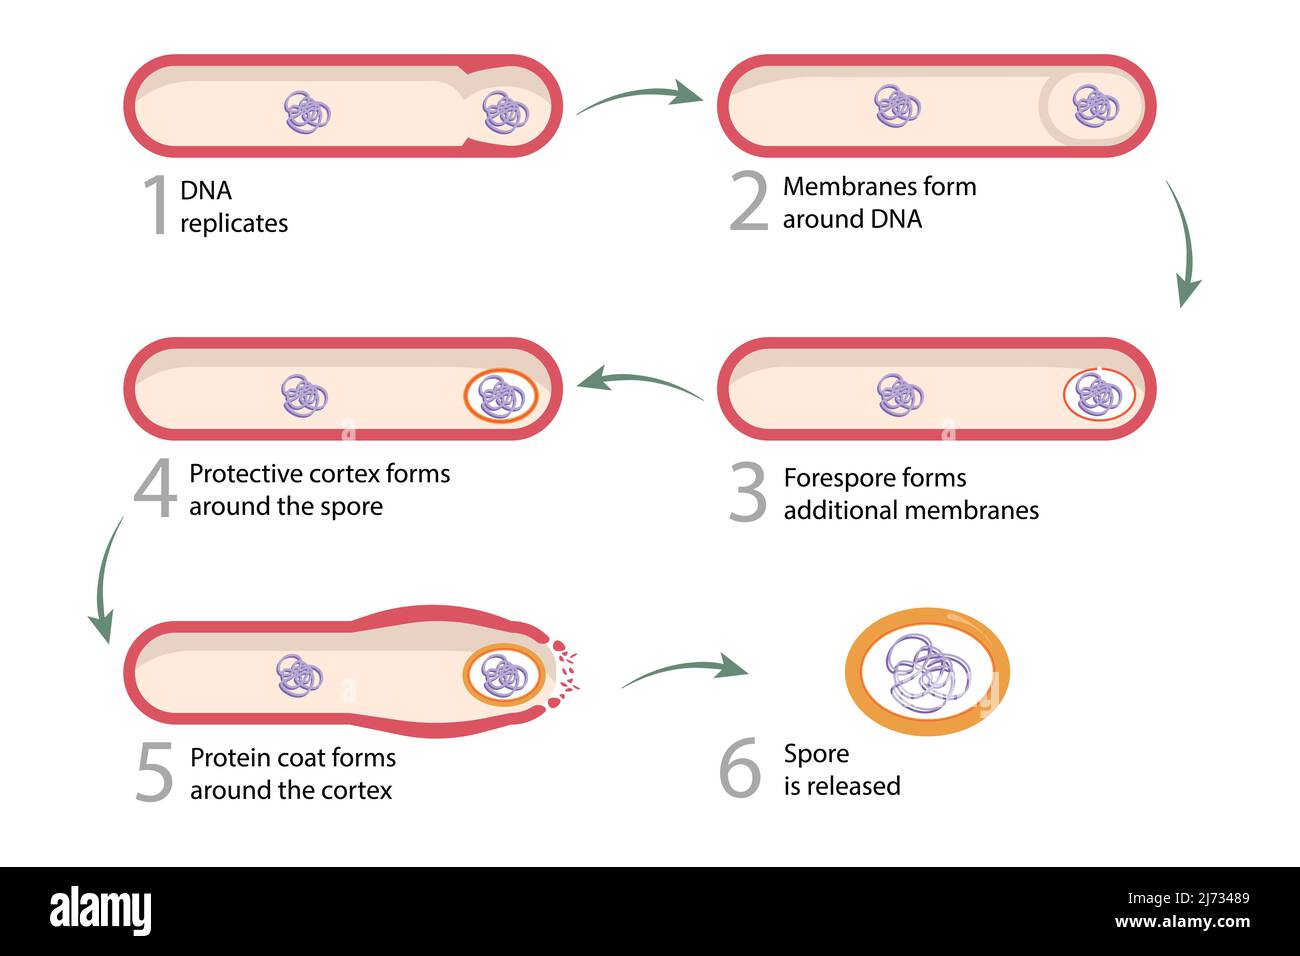 Sporulation: Vegetative Zellen wandeln sich in Endosporen um. Endospor wird nach dem Zerfall der Mutterzelle freigesetzt, was die Sporulation vervollständigt. Stock Vektor